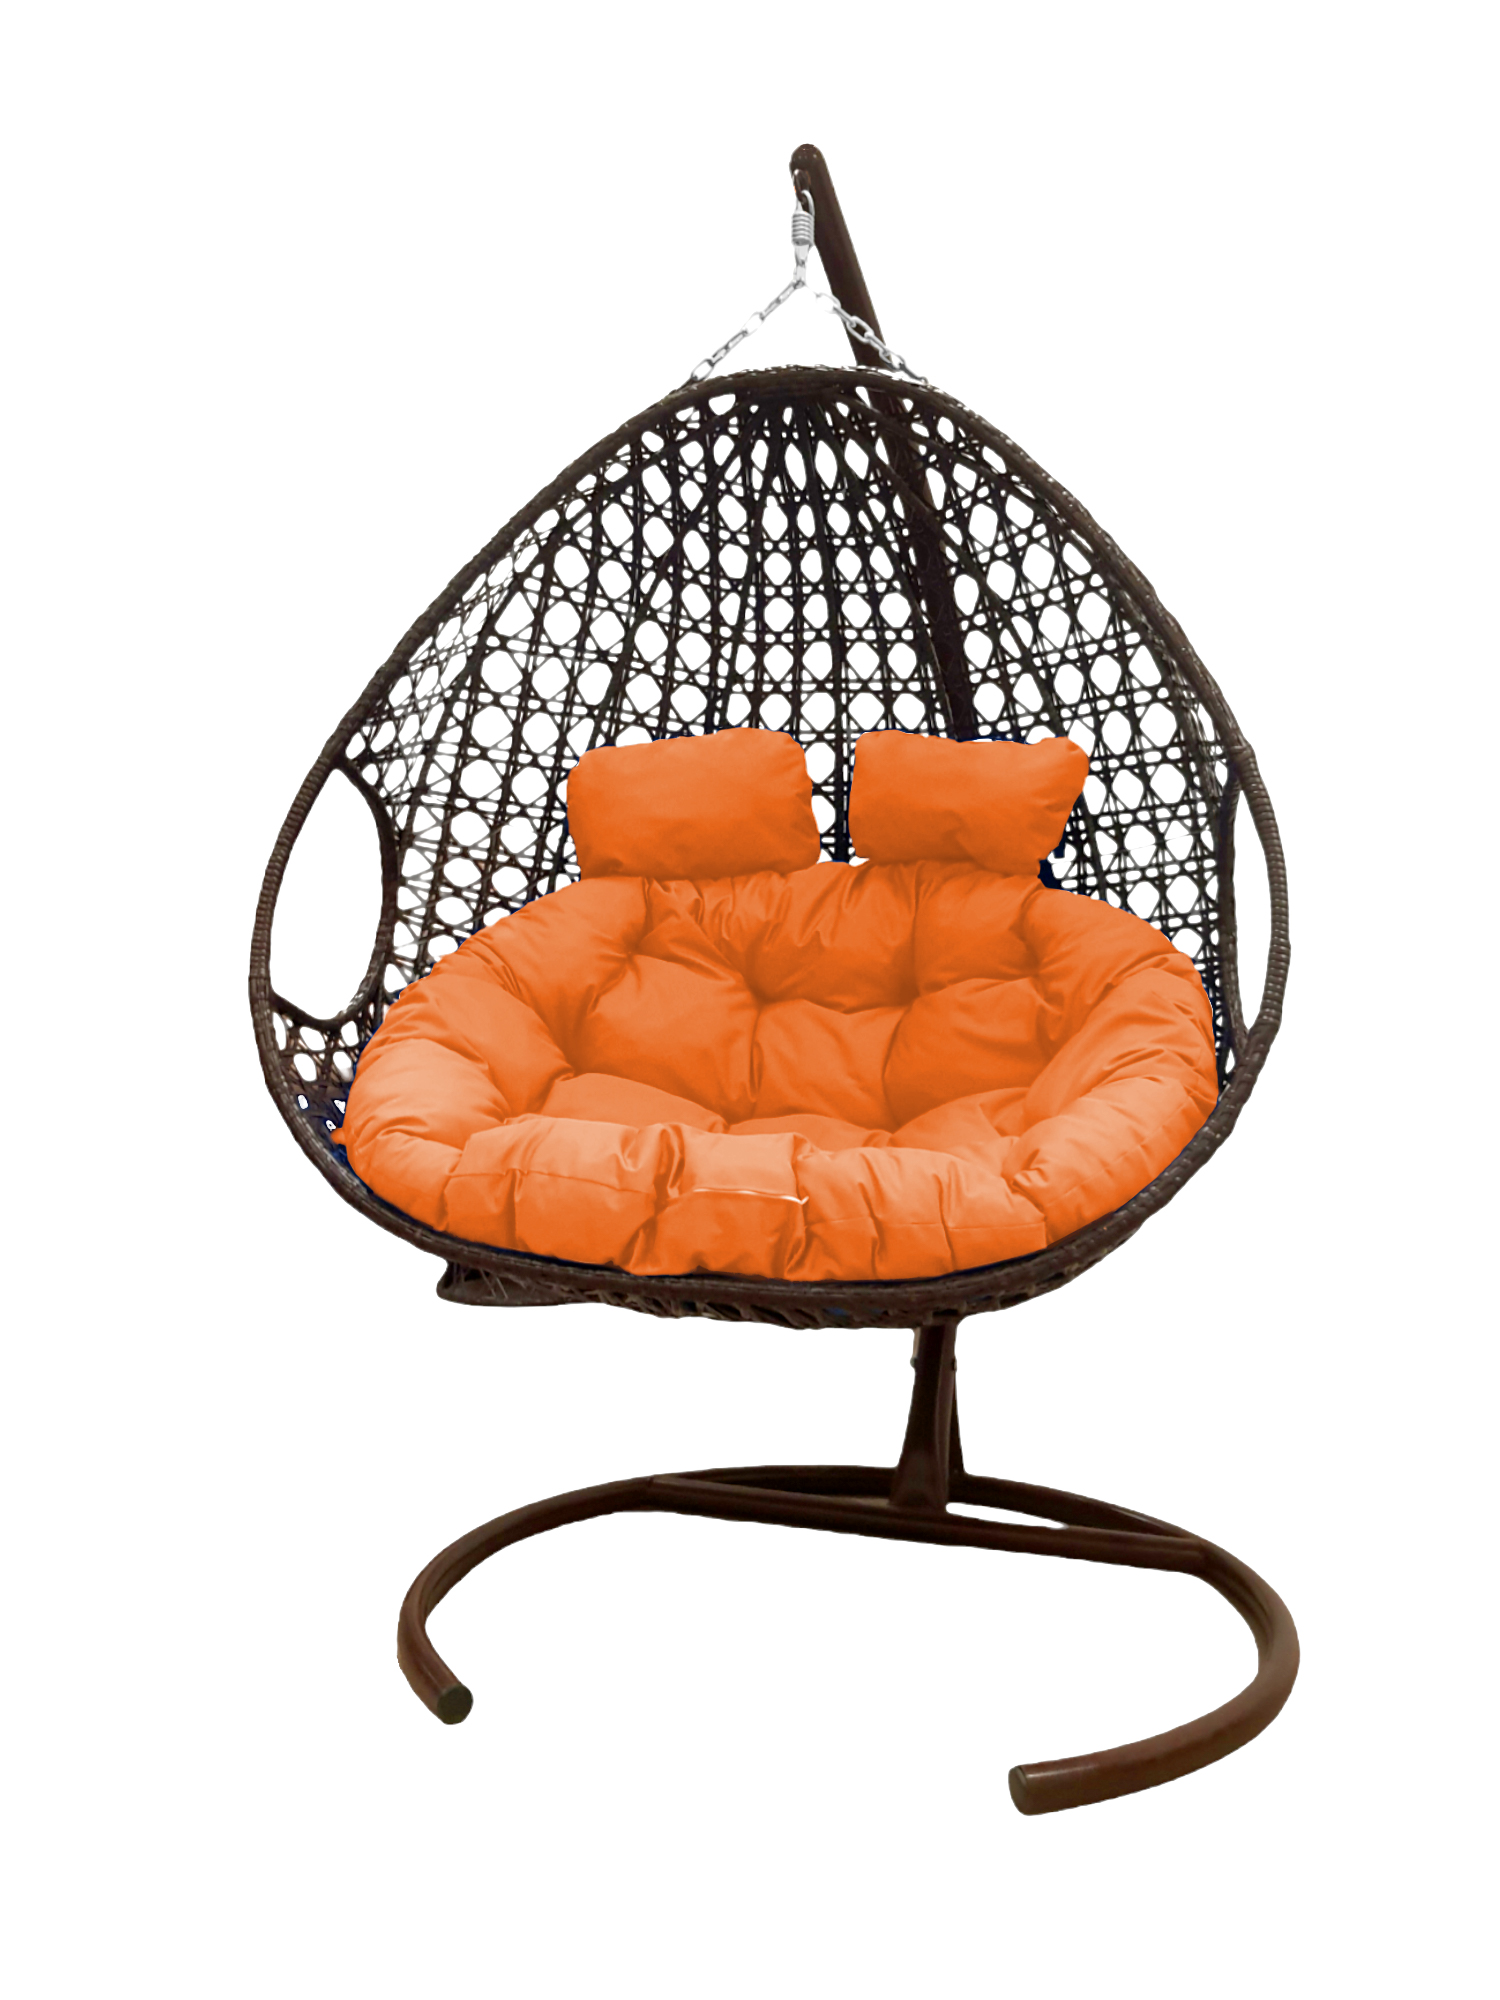 фото Подвесное кресло коричневый m-group для двоих люкс 11510207 оранжевая подушка